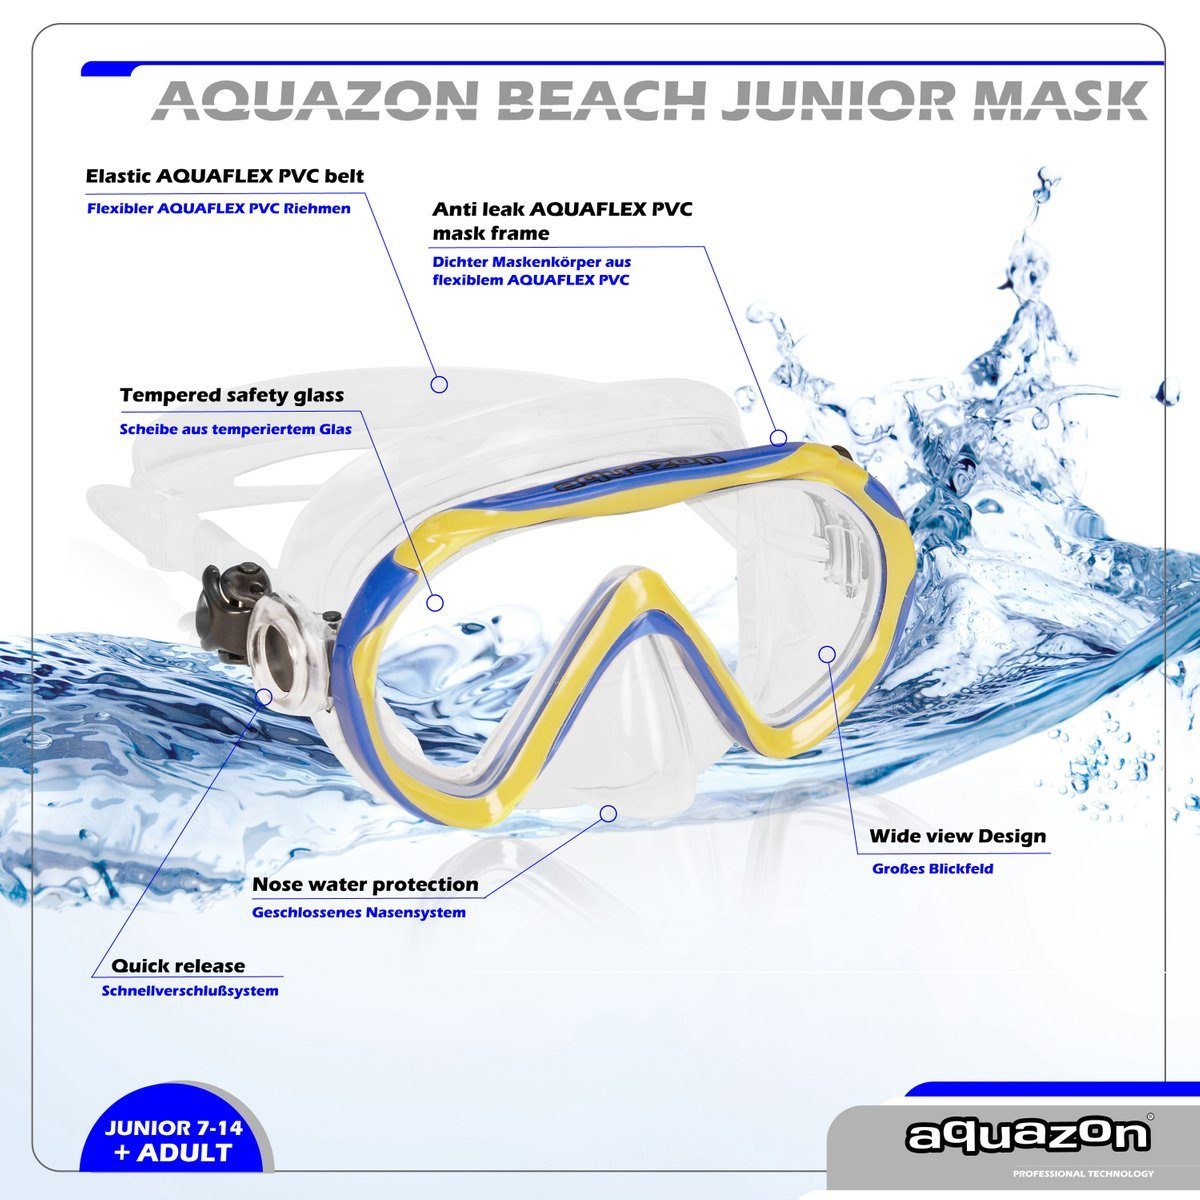 BEACH, AQUAZON Kinder für Schnorchelbrille Junior Silikon Taucherbrille blue-yellow Jahre, 7-12